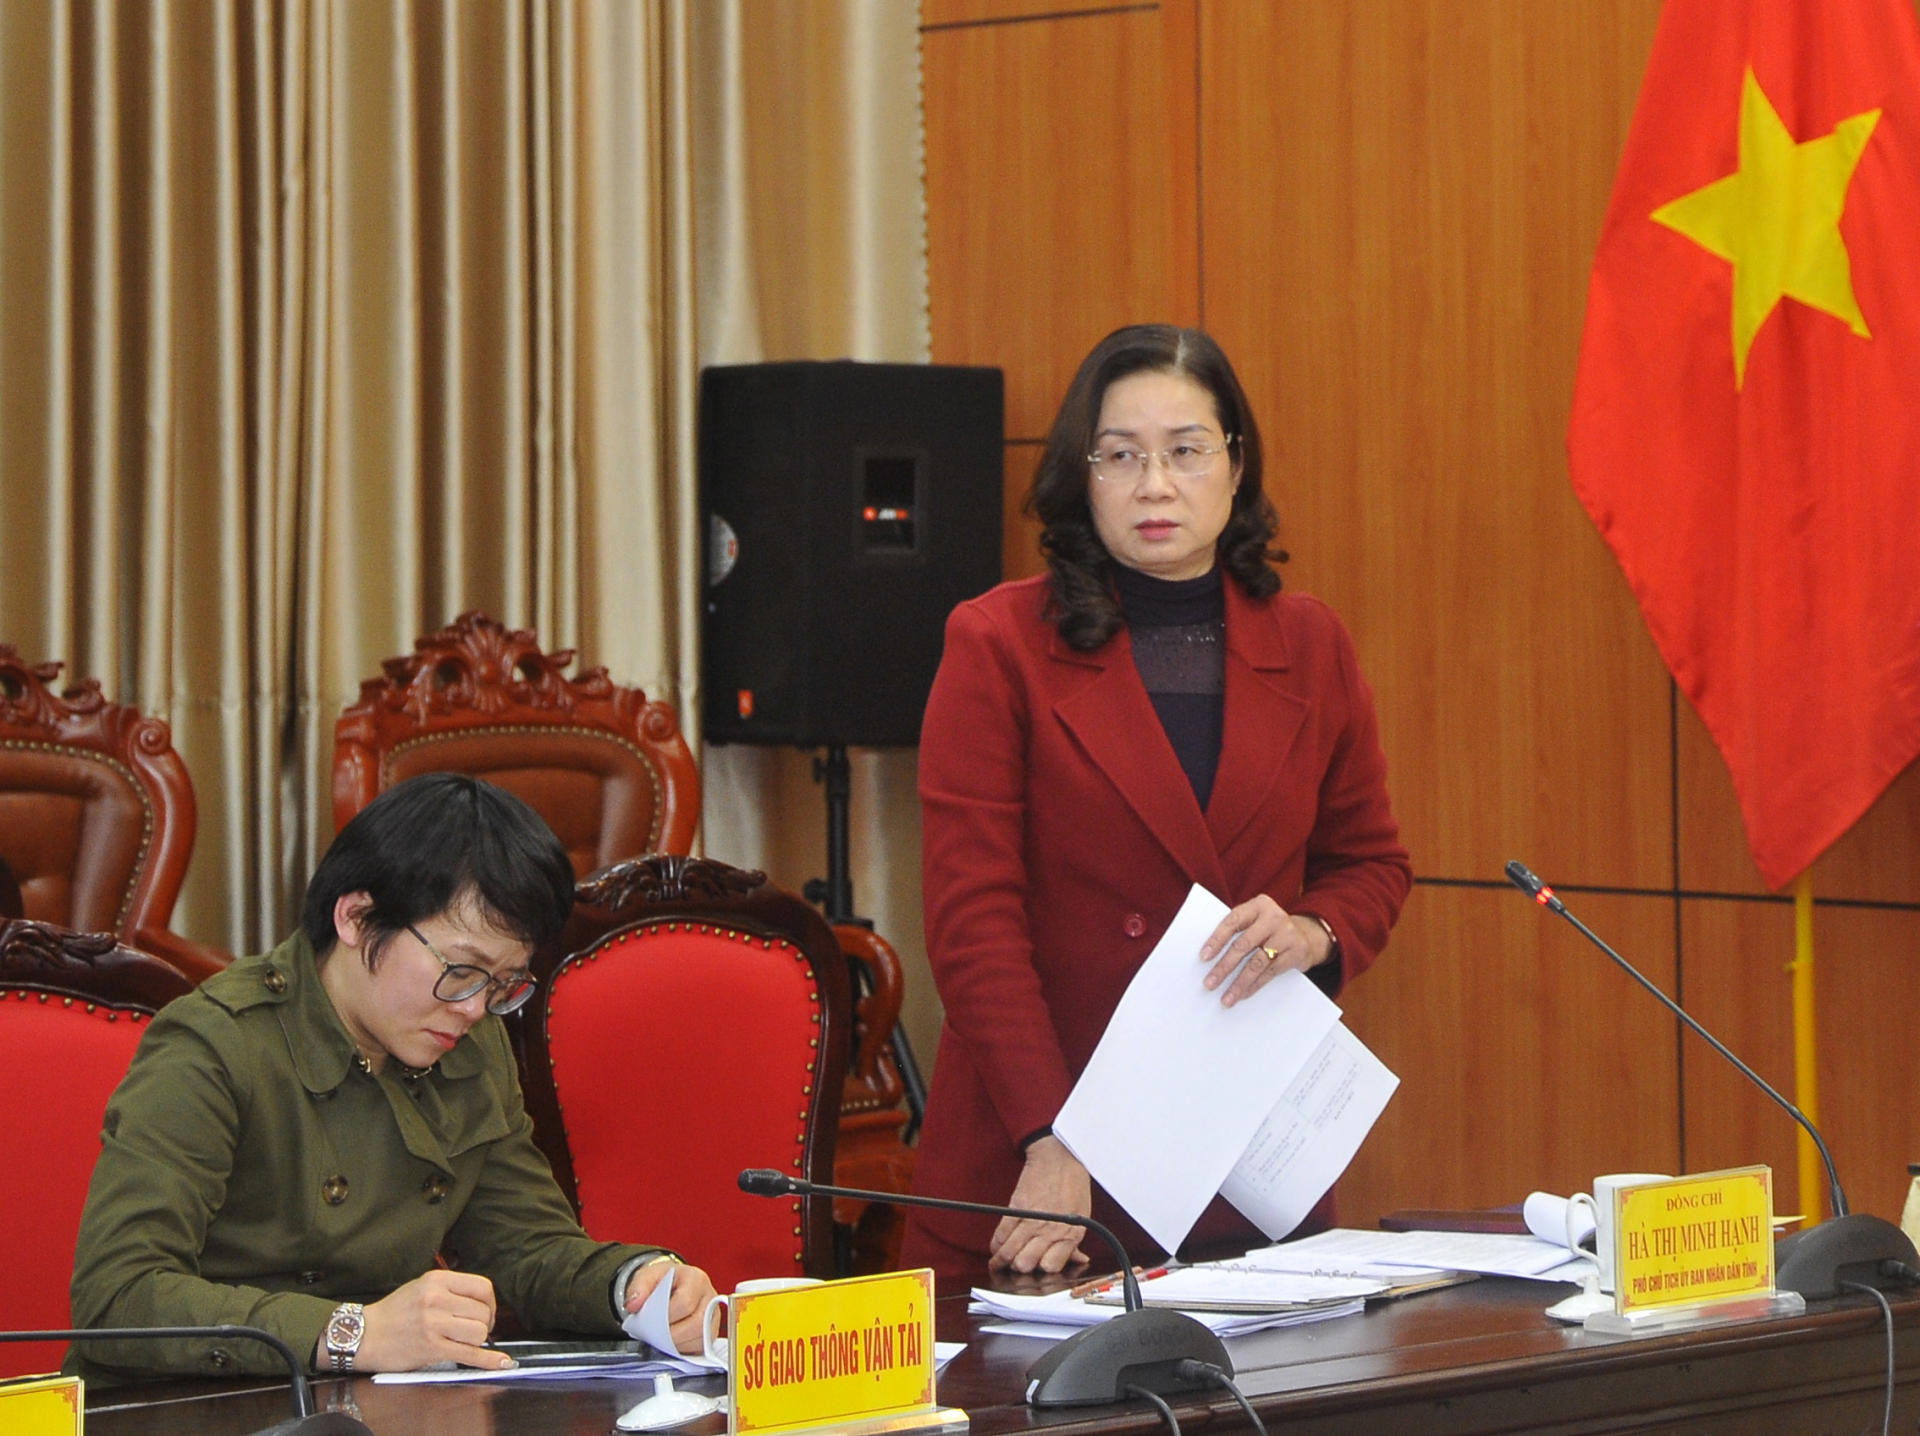 Phó Chủ tịch UBND tỉnh Hà Thị Minh Hạnh đề nghị các sở, ngành, địa phương quyết tâm, quyết liệt, xác định mục tiêu cụ thể trong giải ngân vốn đầu tư công.